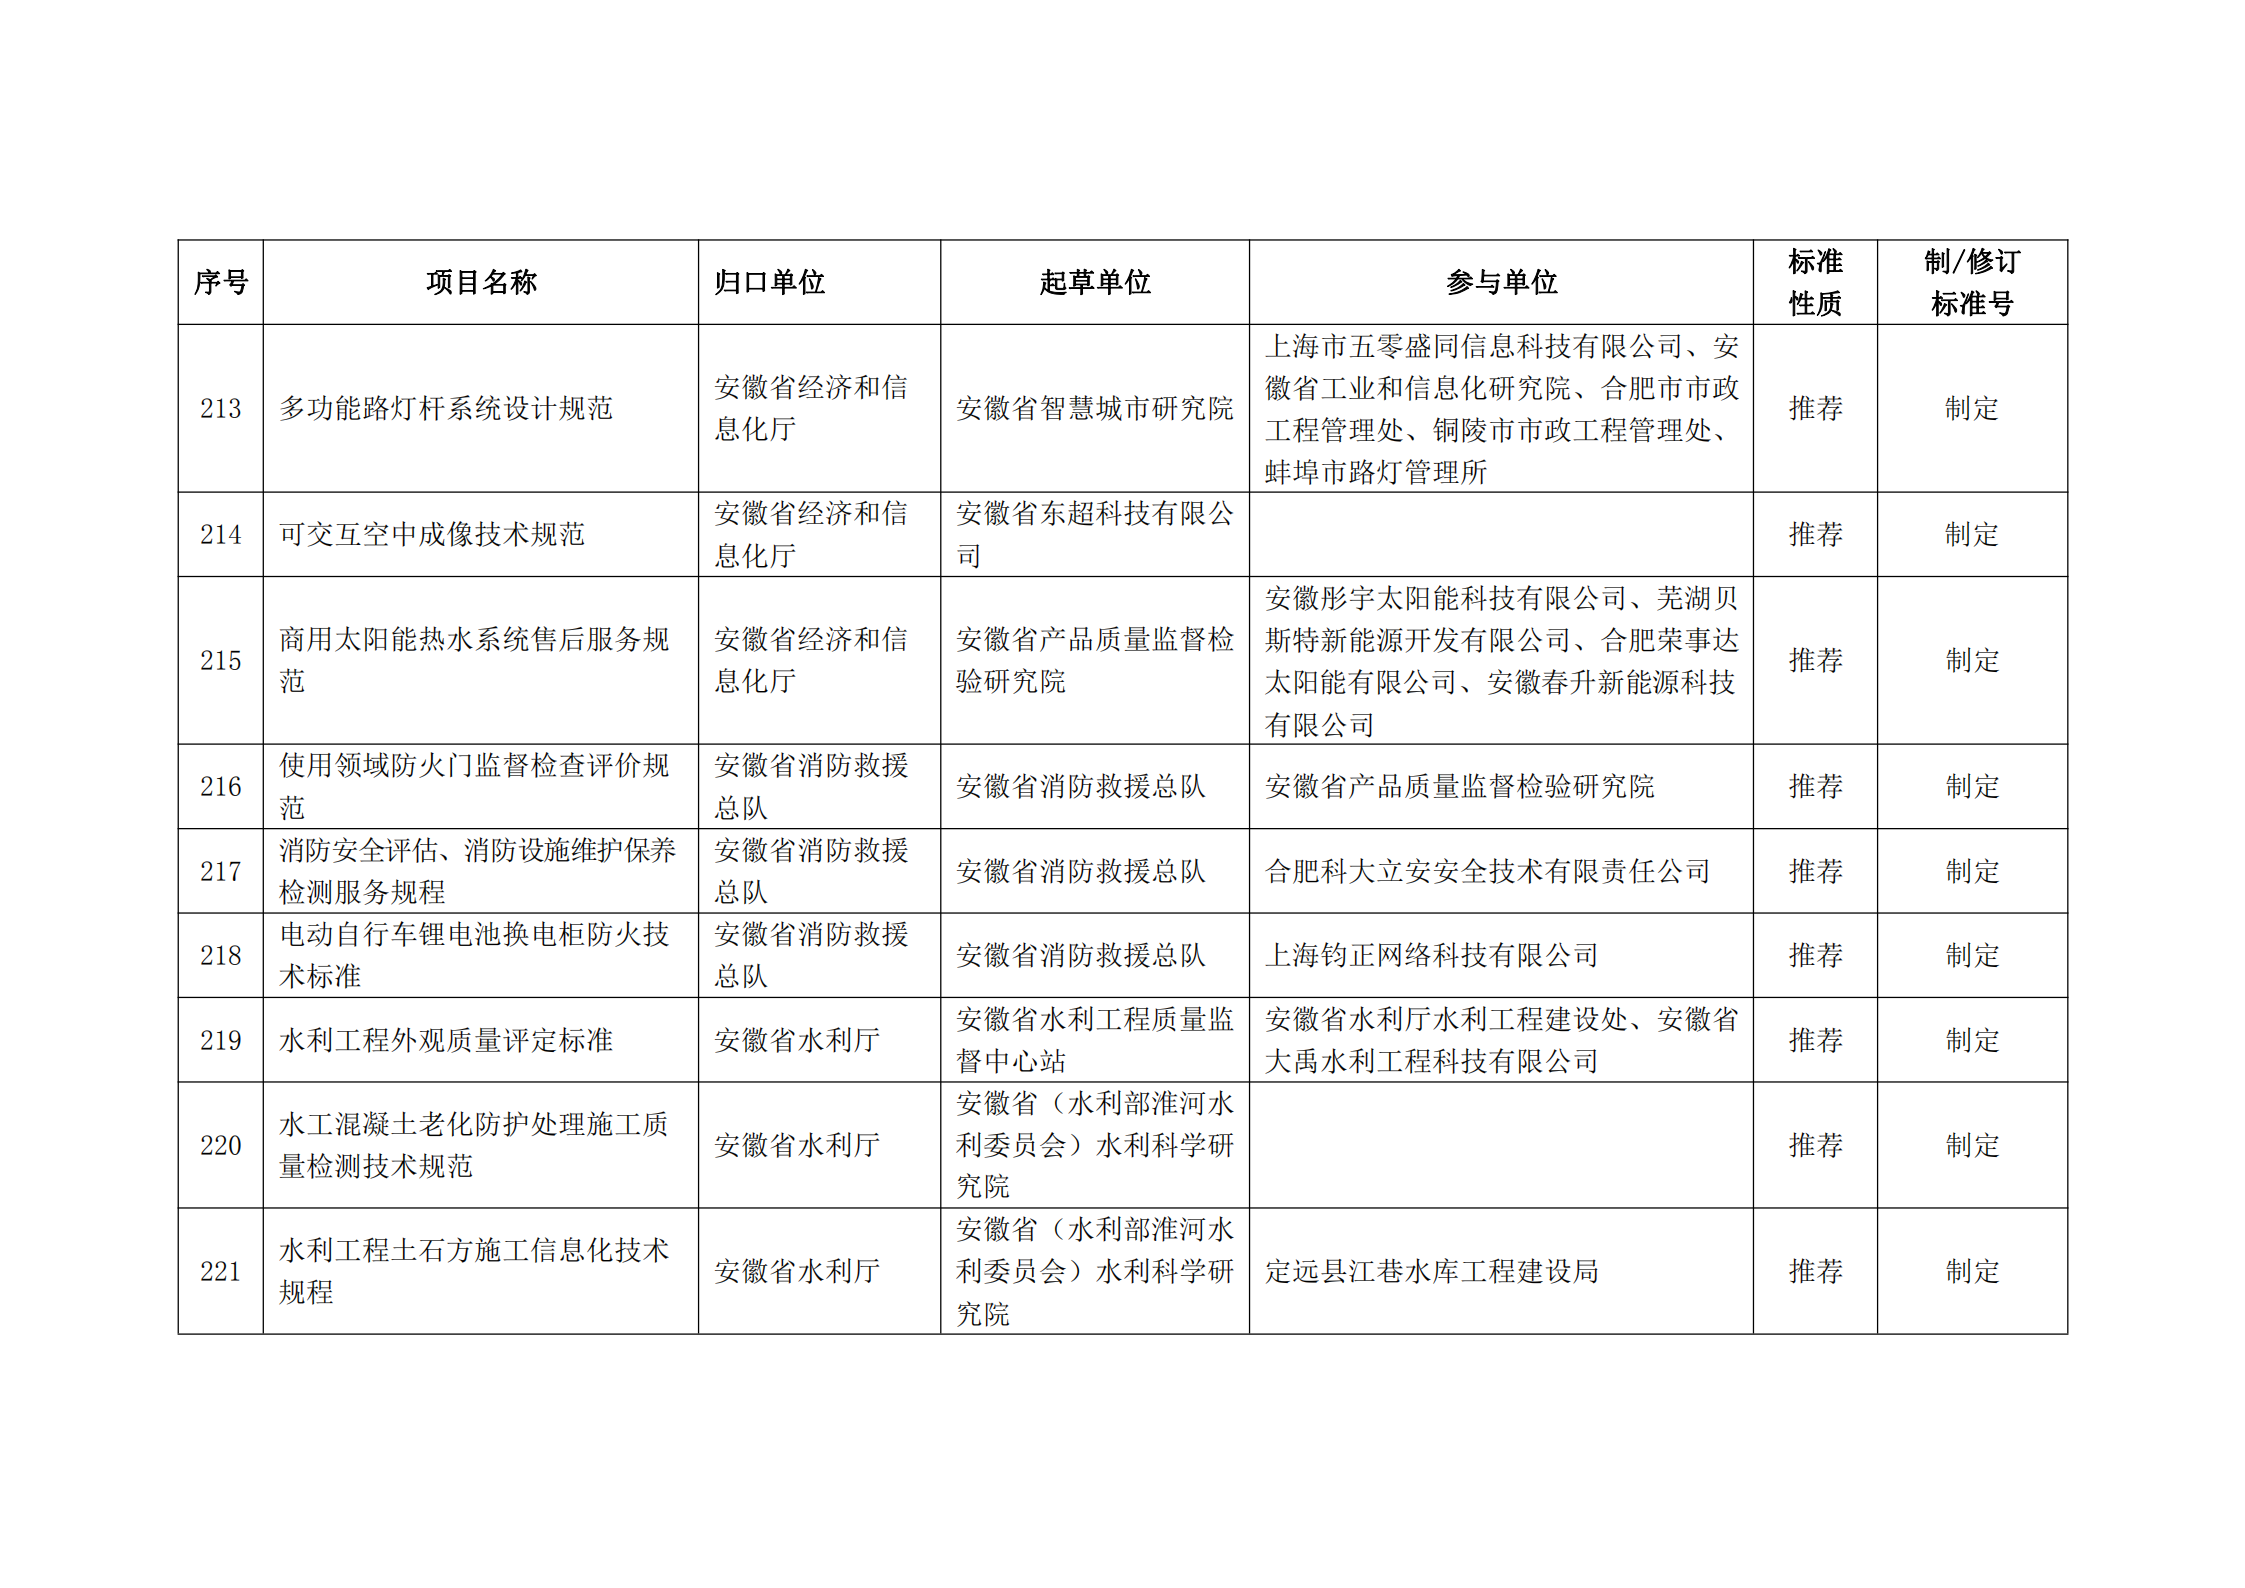 2020 年第二批安徽省地方标准制、修订计划项目汇总表(图24)